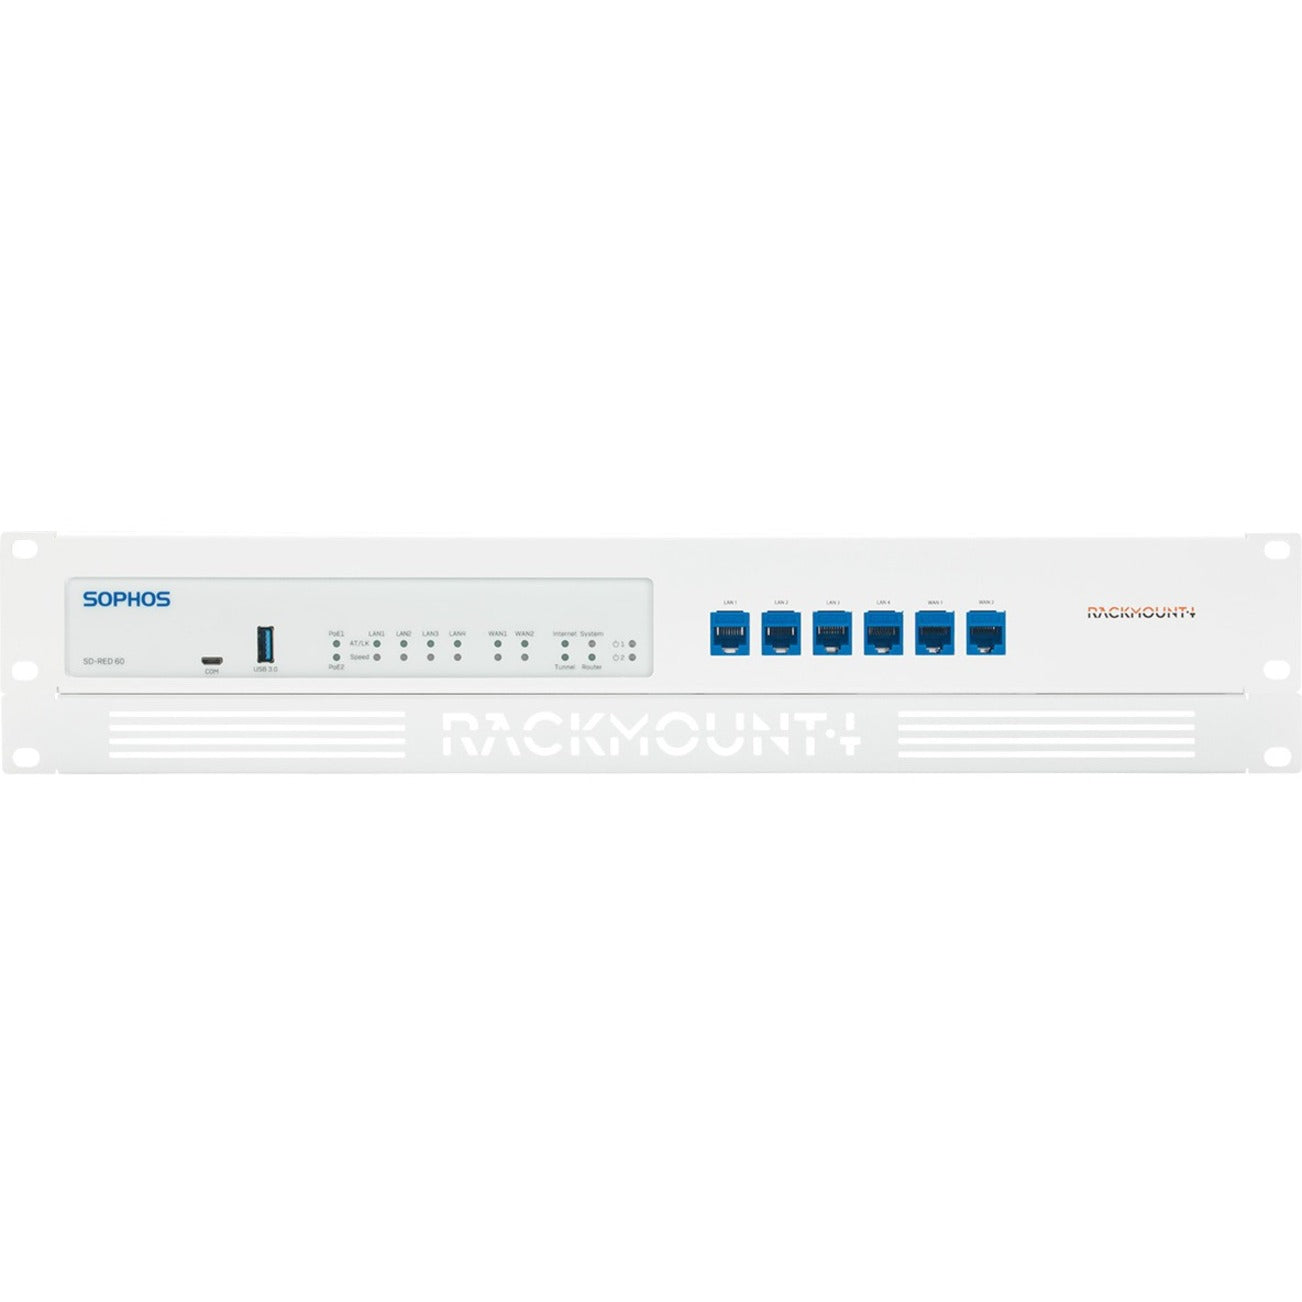 RACKMOUNT.IT RM-SR-T10 Rack Mount for Network Equipment, Firewall - Signal White